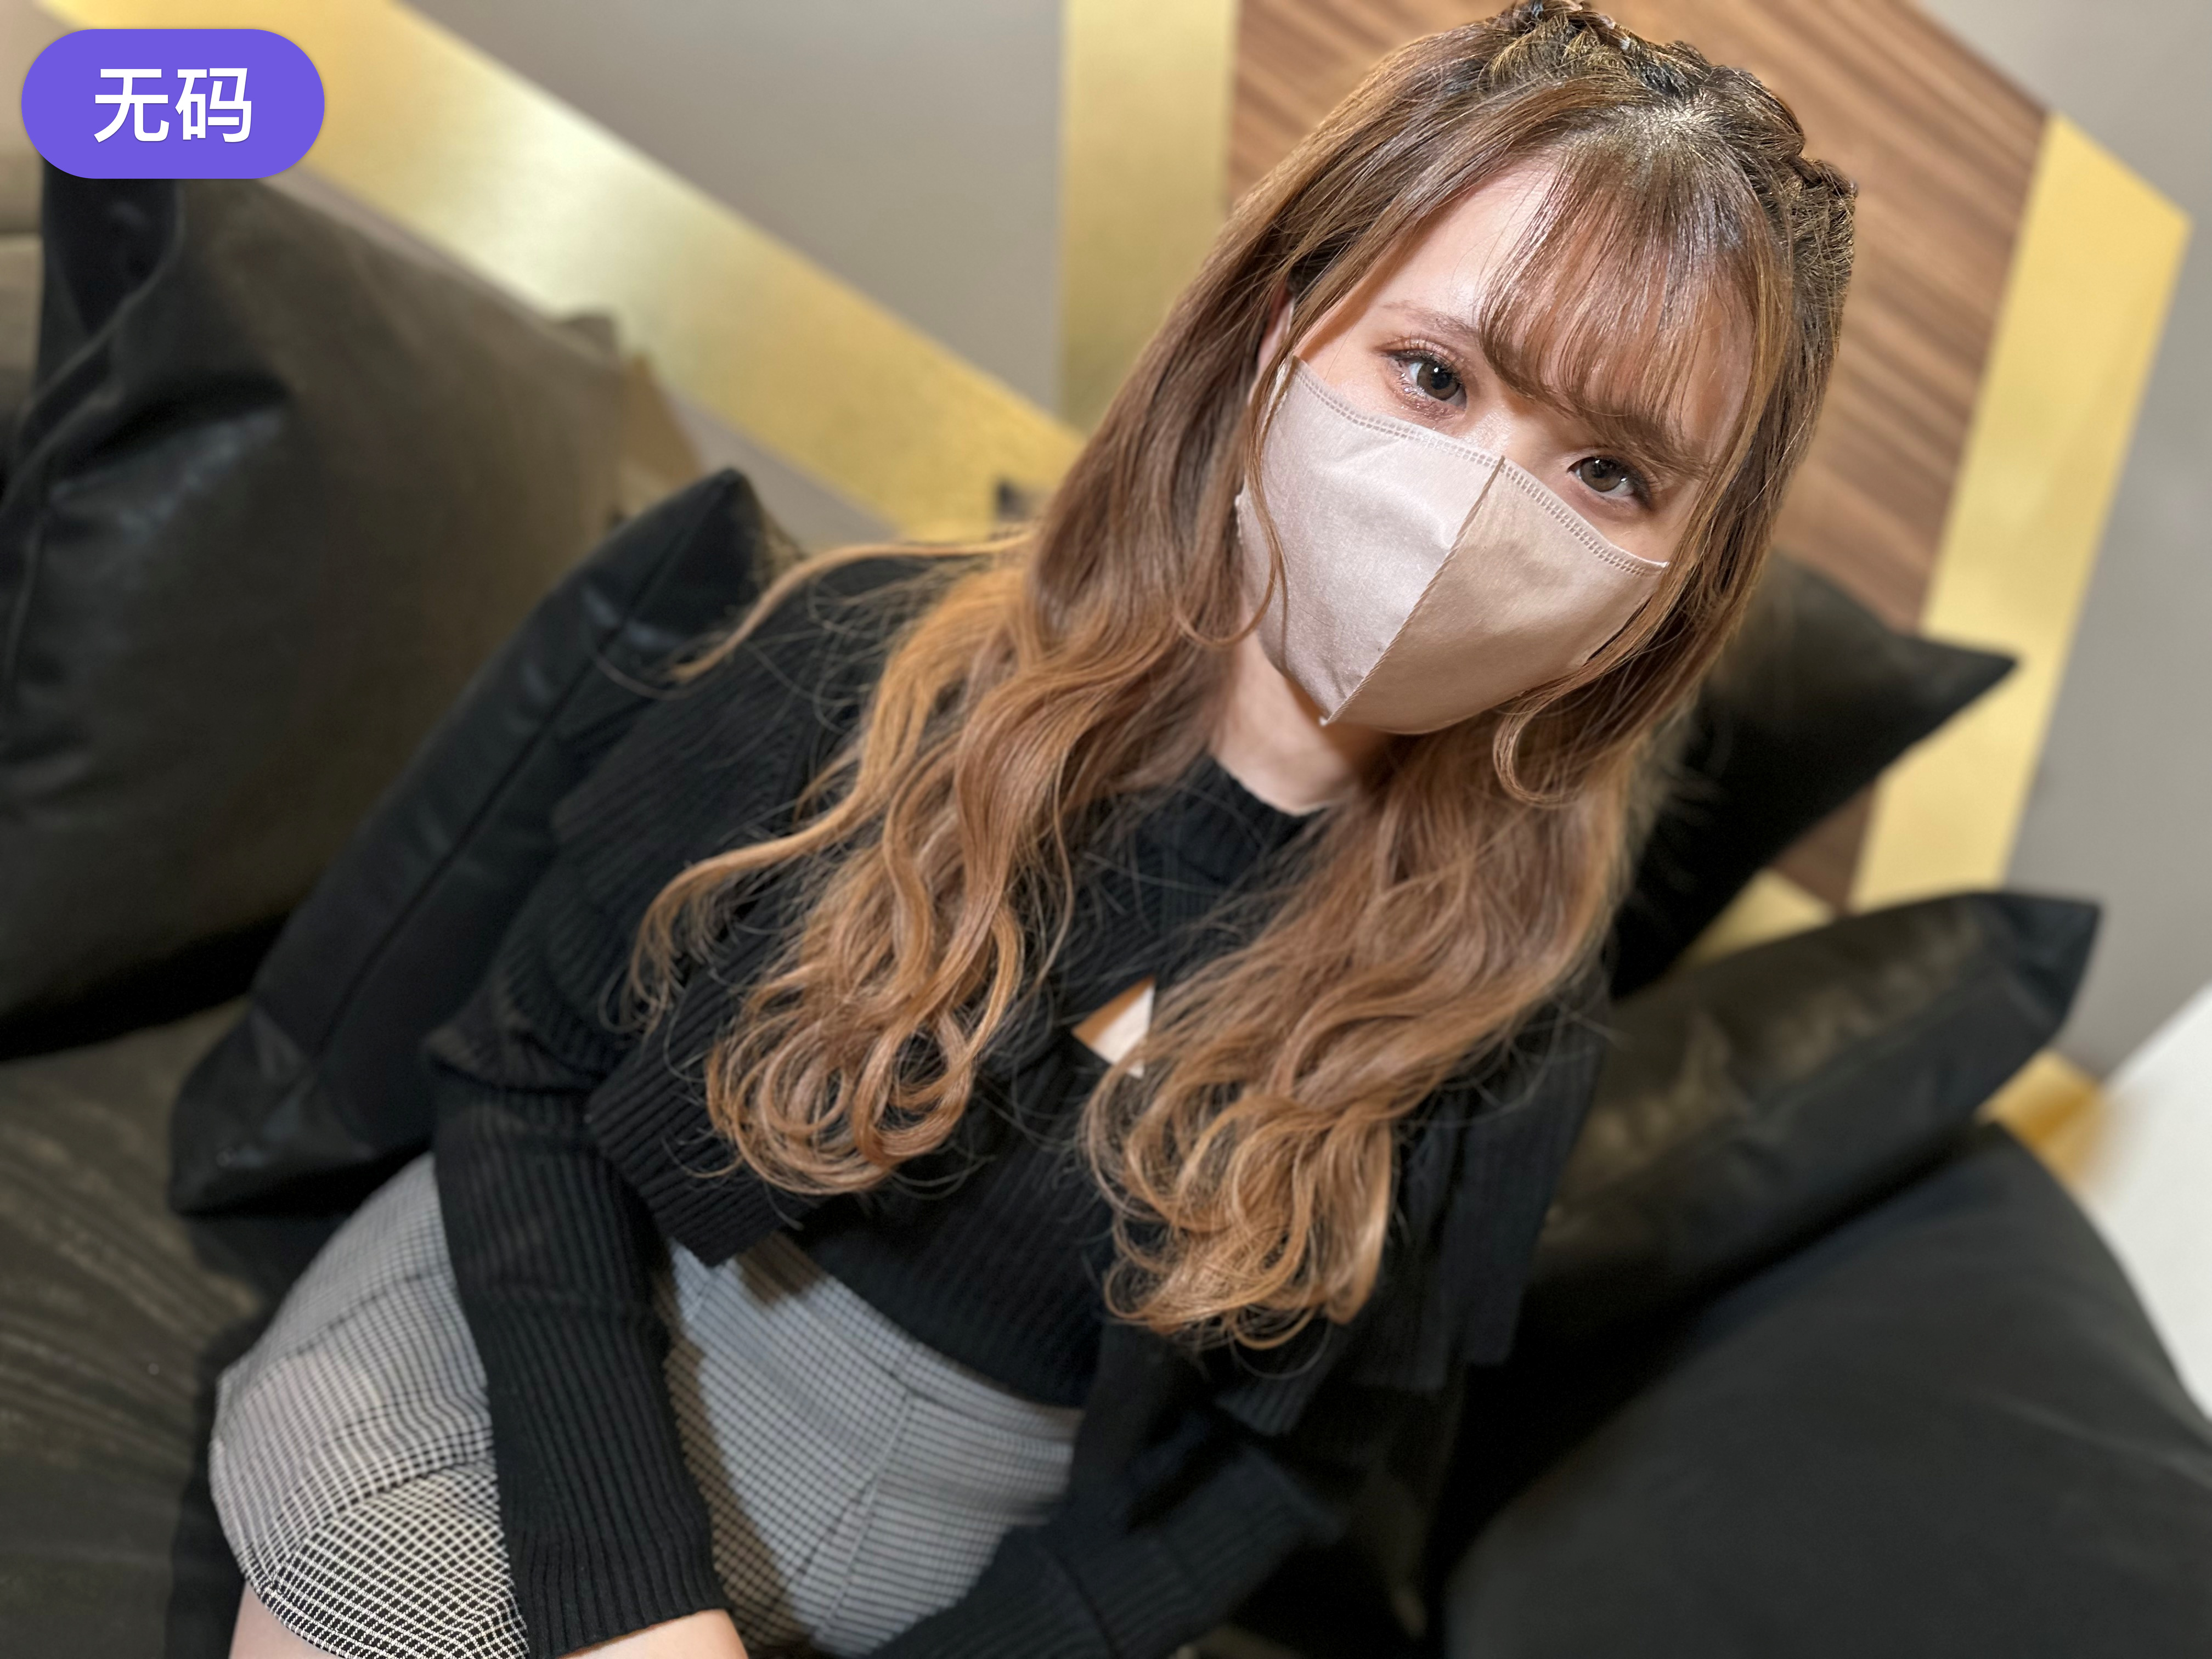 国产精品国产一级国产AV,年轻的妹妹麻豆免费,日本一个动漫里面男的都戴面具侵犯女的,在线日韩AV电影